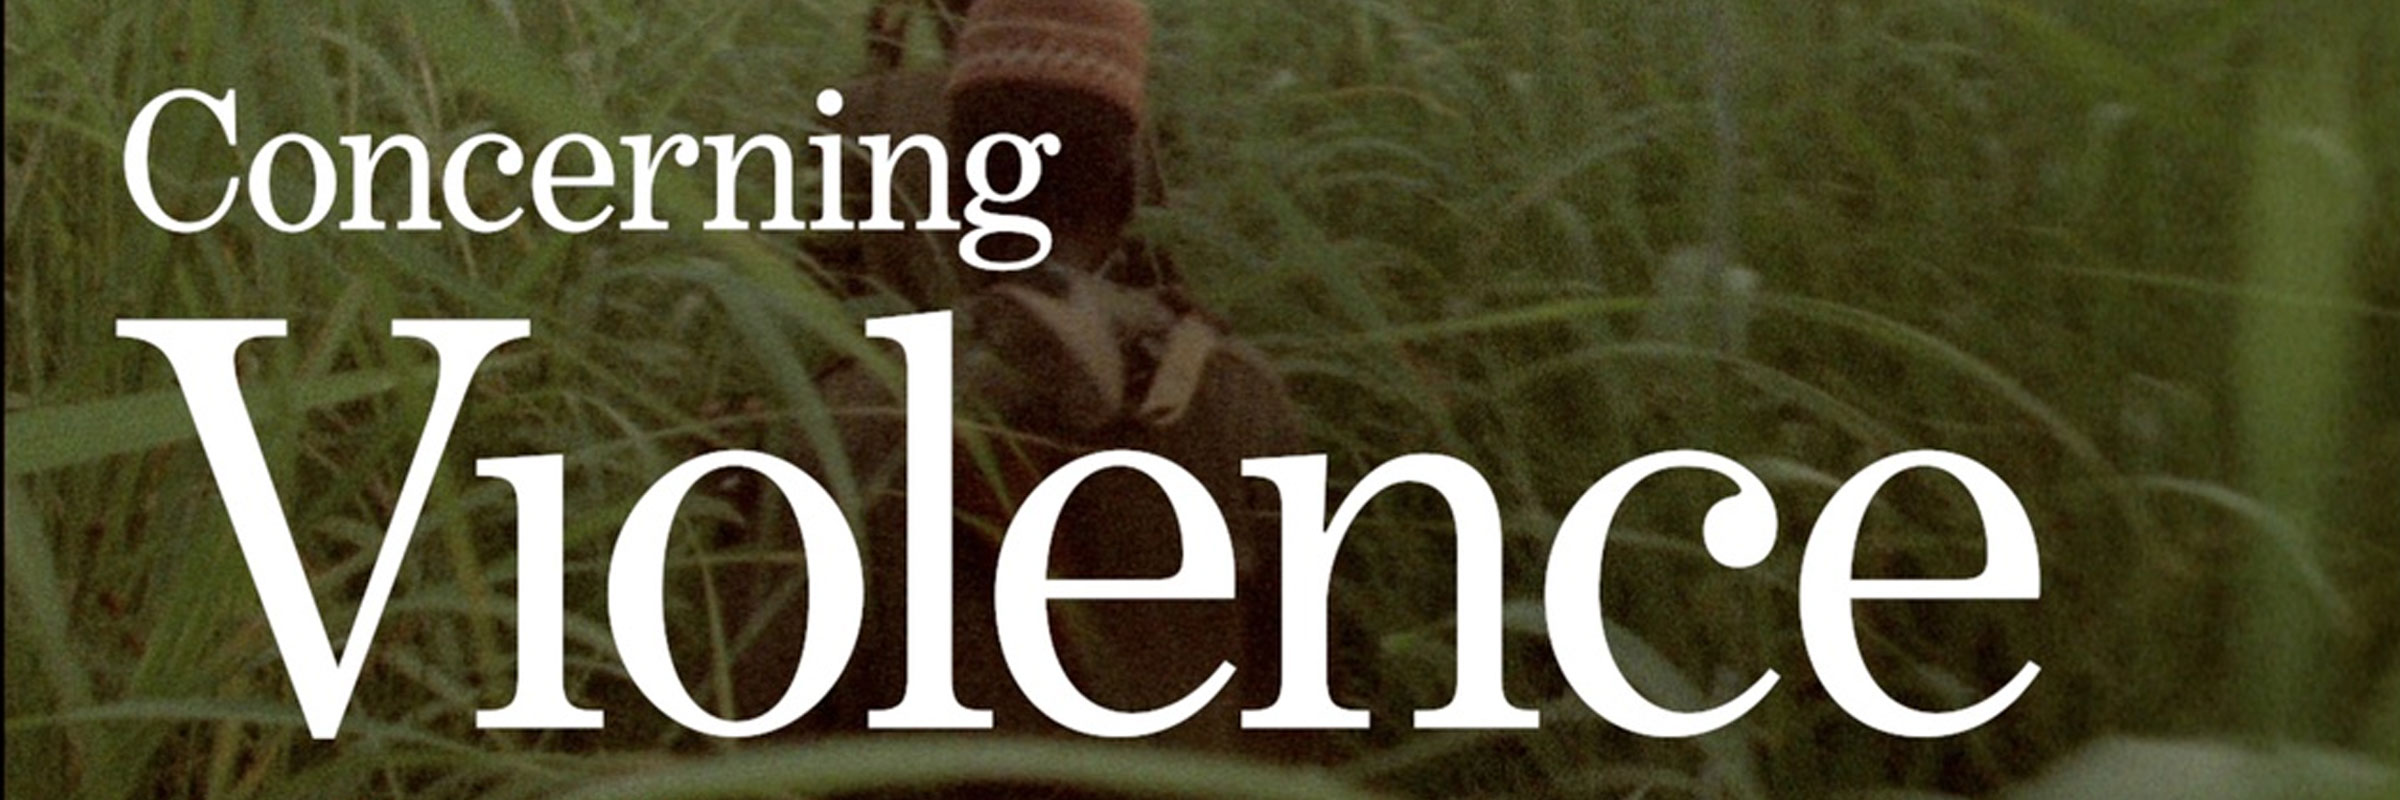 Concerning Violence 